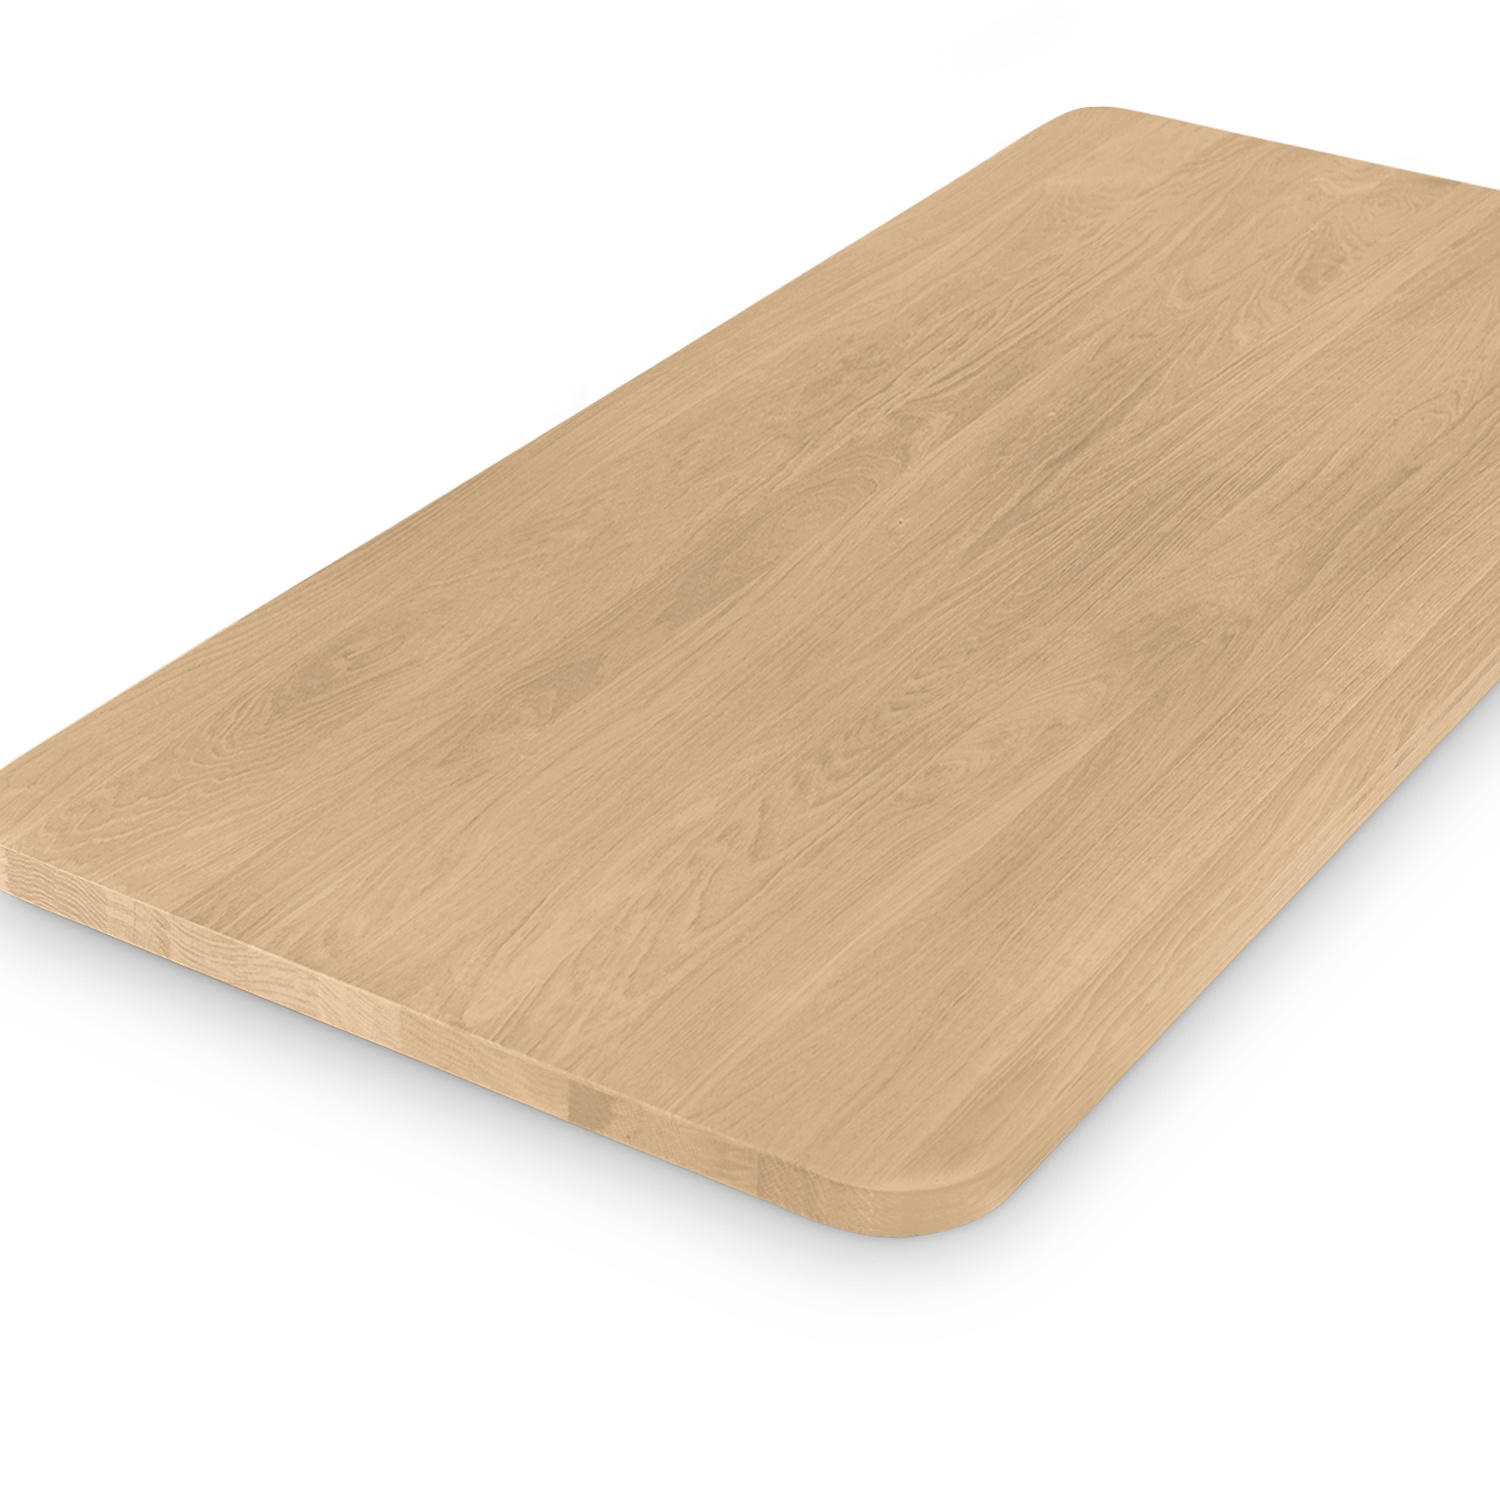  Tischplatte Eiche - mit runden Ecken - nach Maß - 4 cm dick (1-Schicht) - Breite Lamellen (10 - 12 cm breit) - Eichenholz A-Qualität - verleimt & künstlich getrocknet (HF 8-12%) - mit abgerundeten Kanten - 50-120x50-248 cm